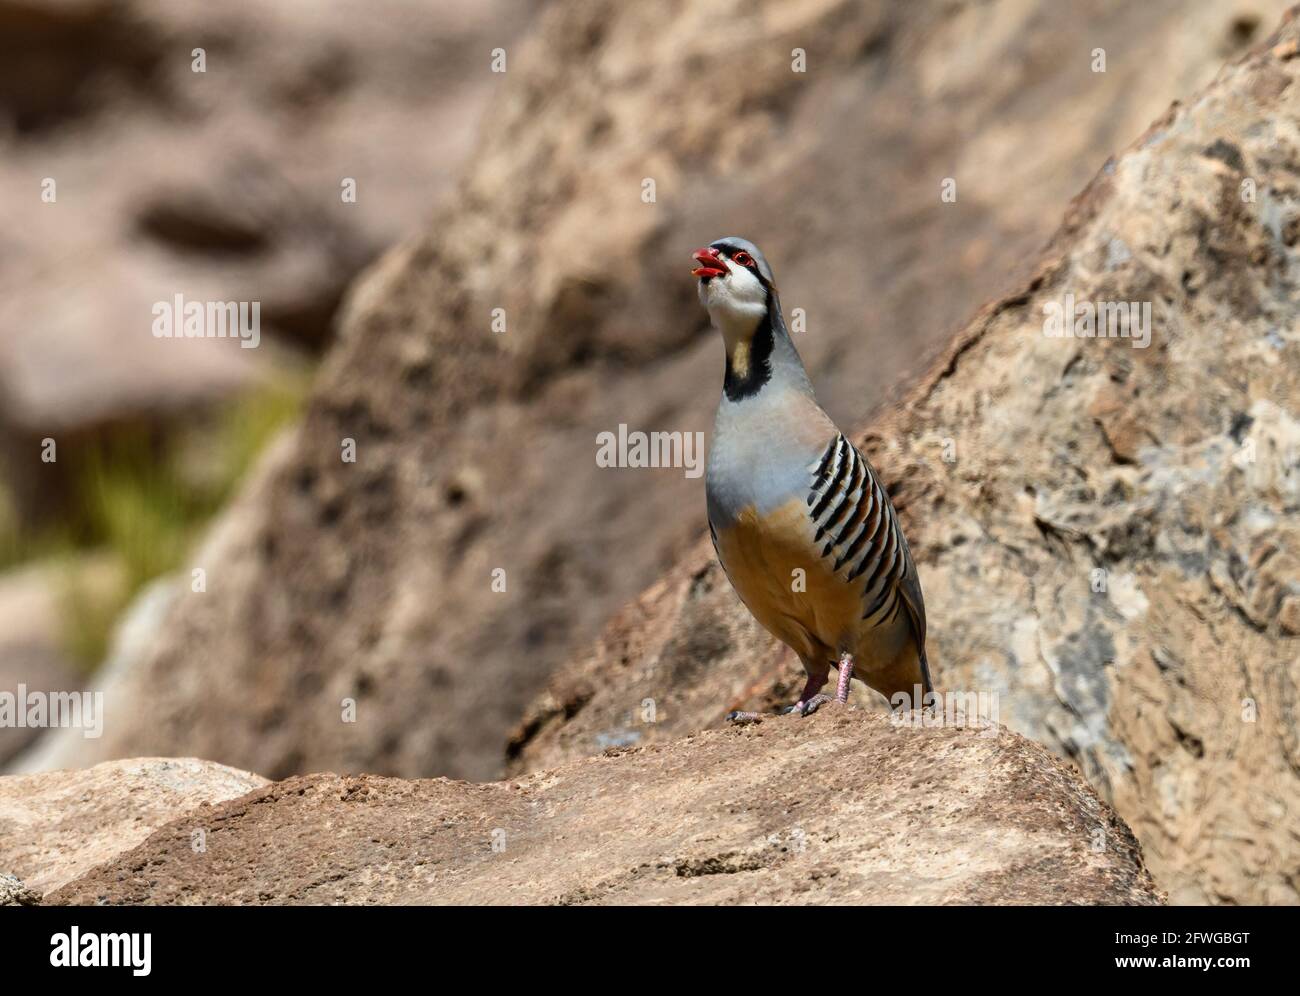 A Chukar partridge (Alectoris chukar) standing on rocks. Colorado, USA. Stock Photo